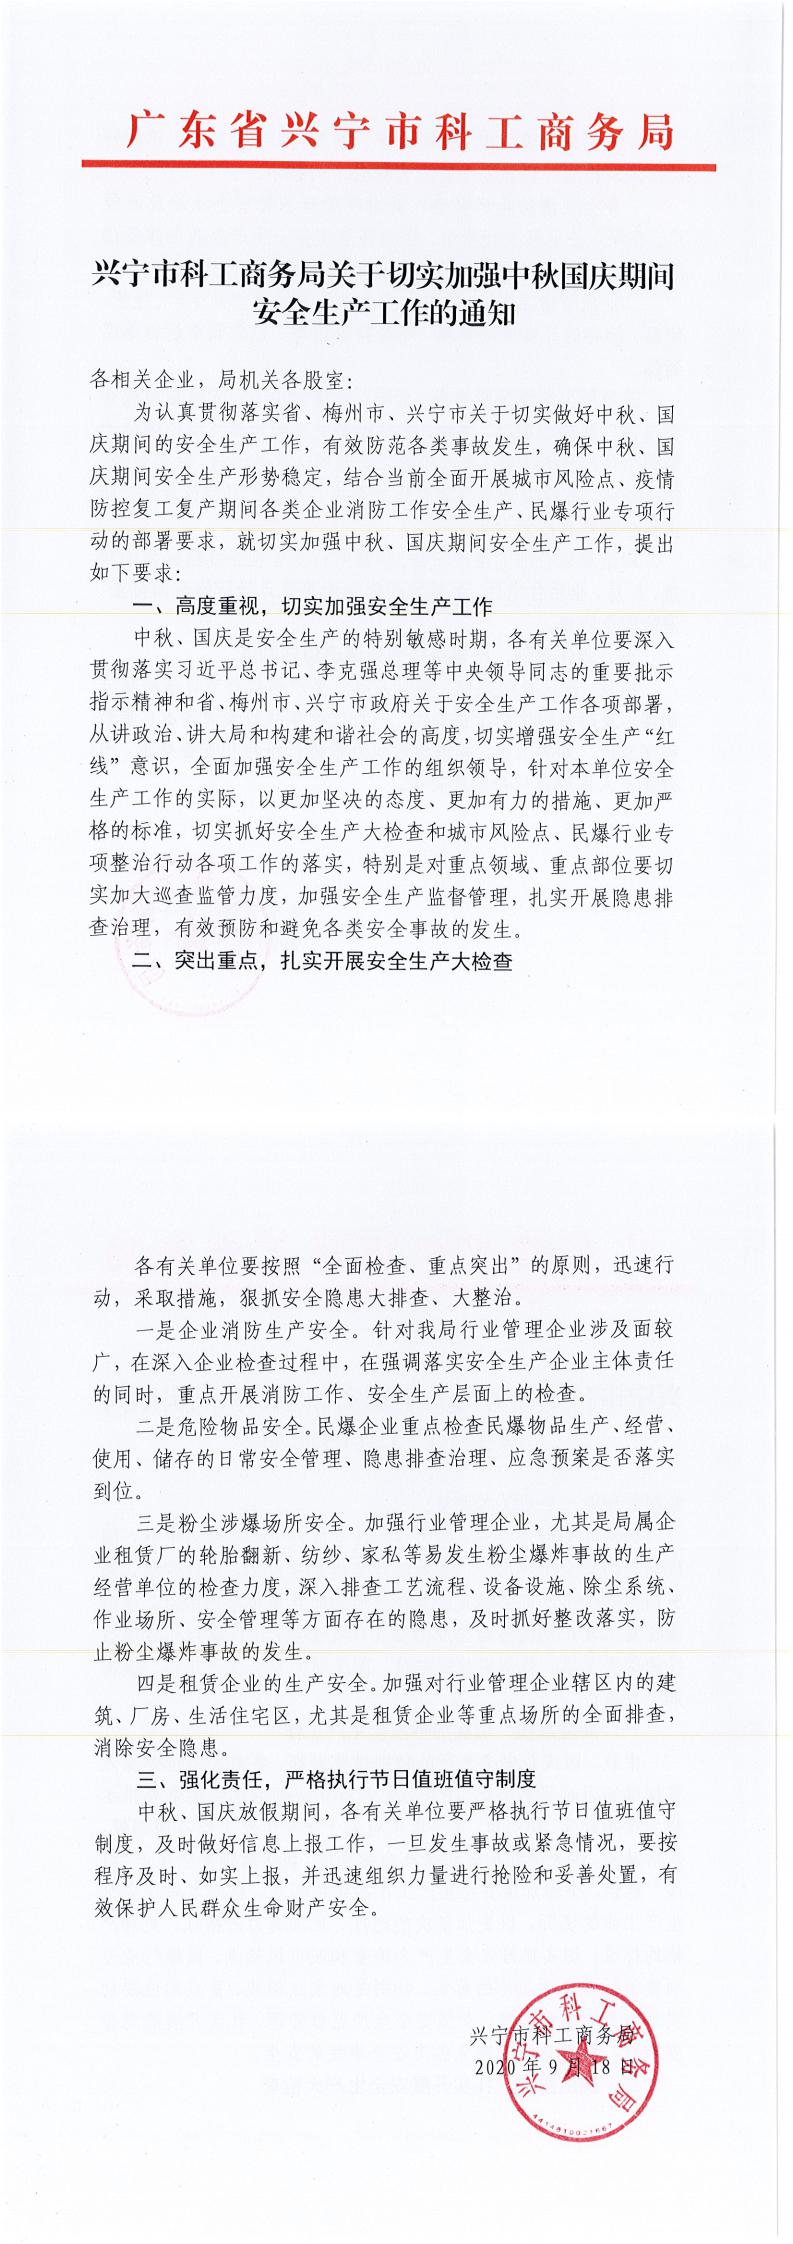 兴宁市科工商务局关于切实加强中秋国庆期间安全生产工作的通知_0.jpg